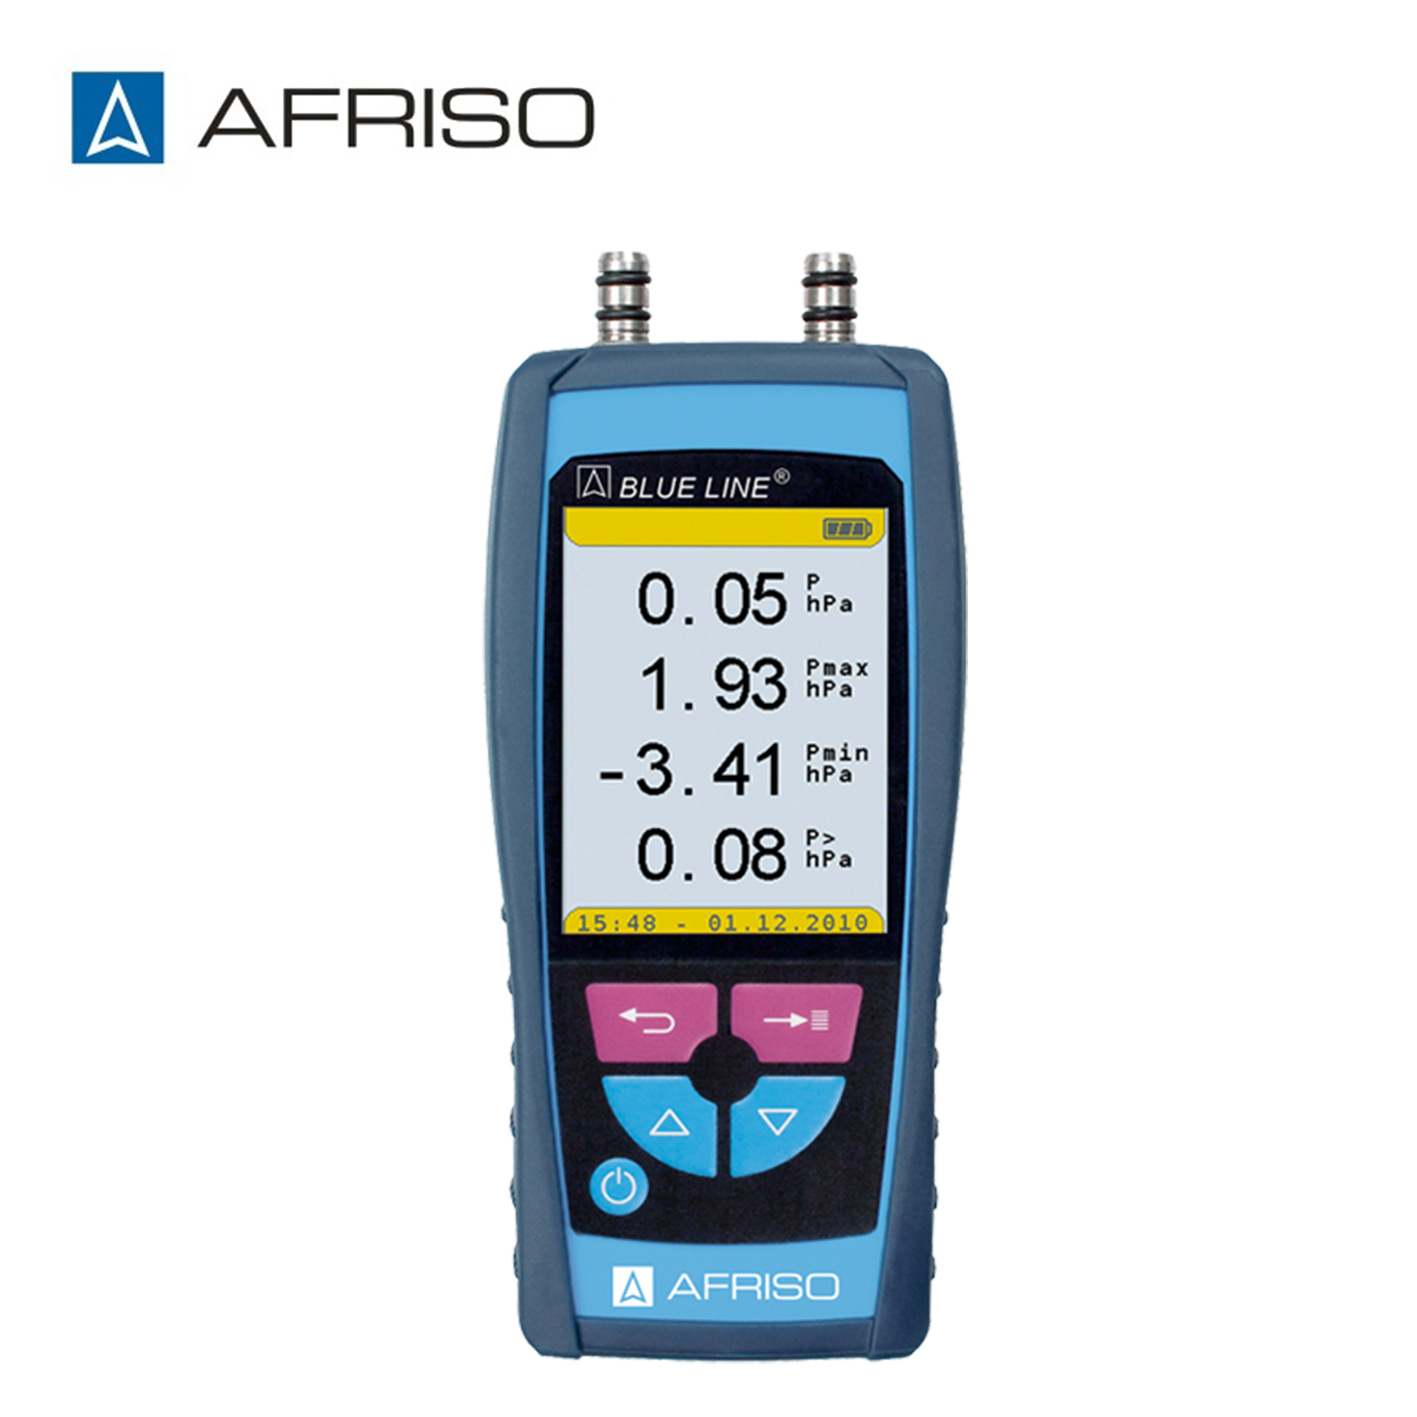 AFRISO菲索手持式电子压力计S4600 ST